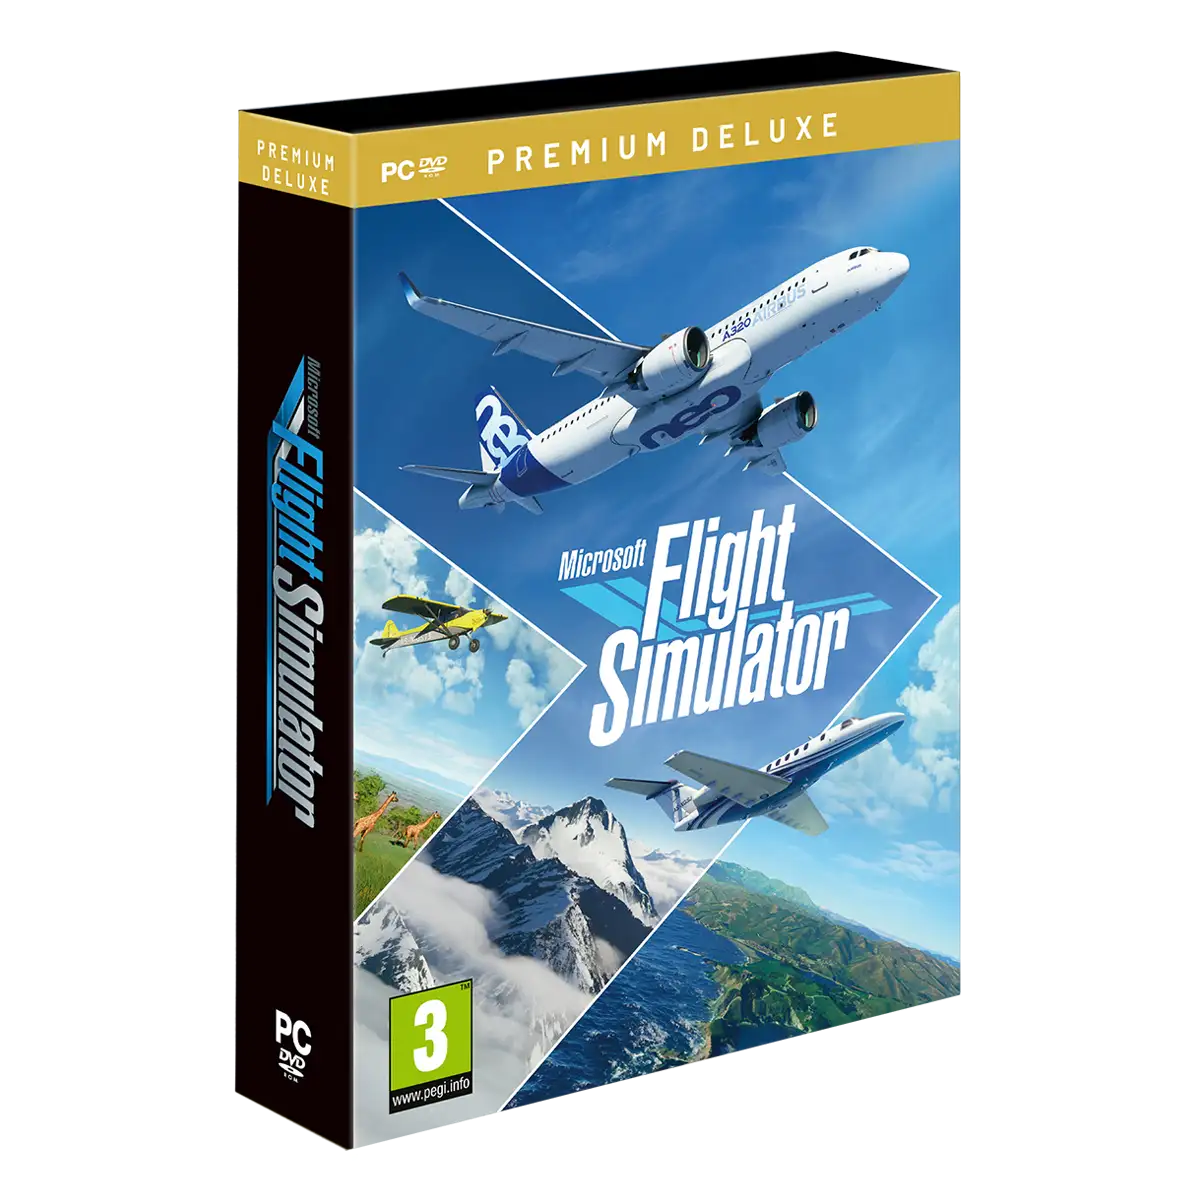 Microsoft Flight Sim 2020 Premium Deluxe Edition (PC) (CZ) Cover